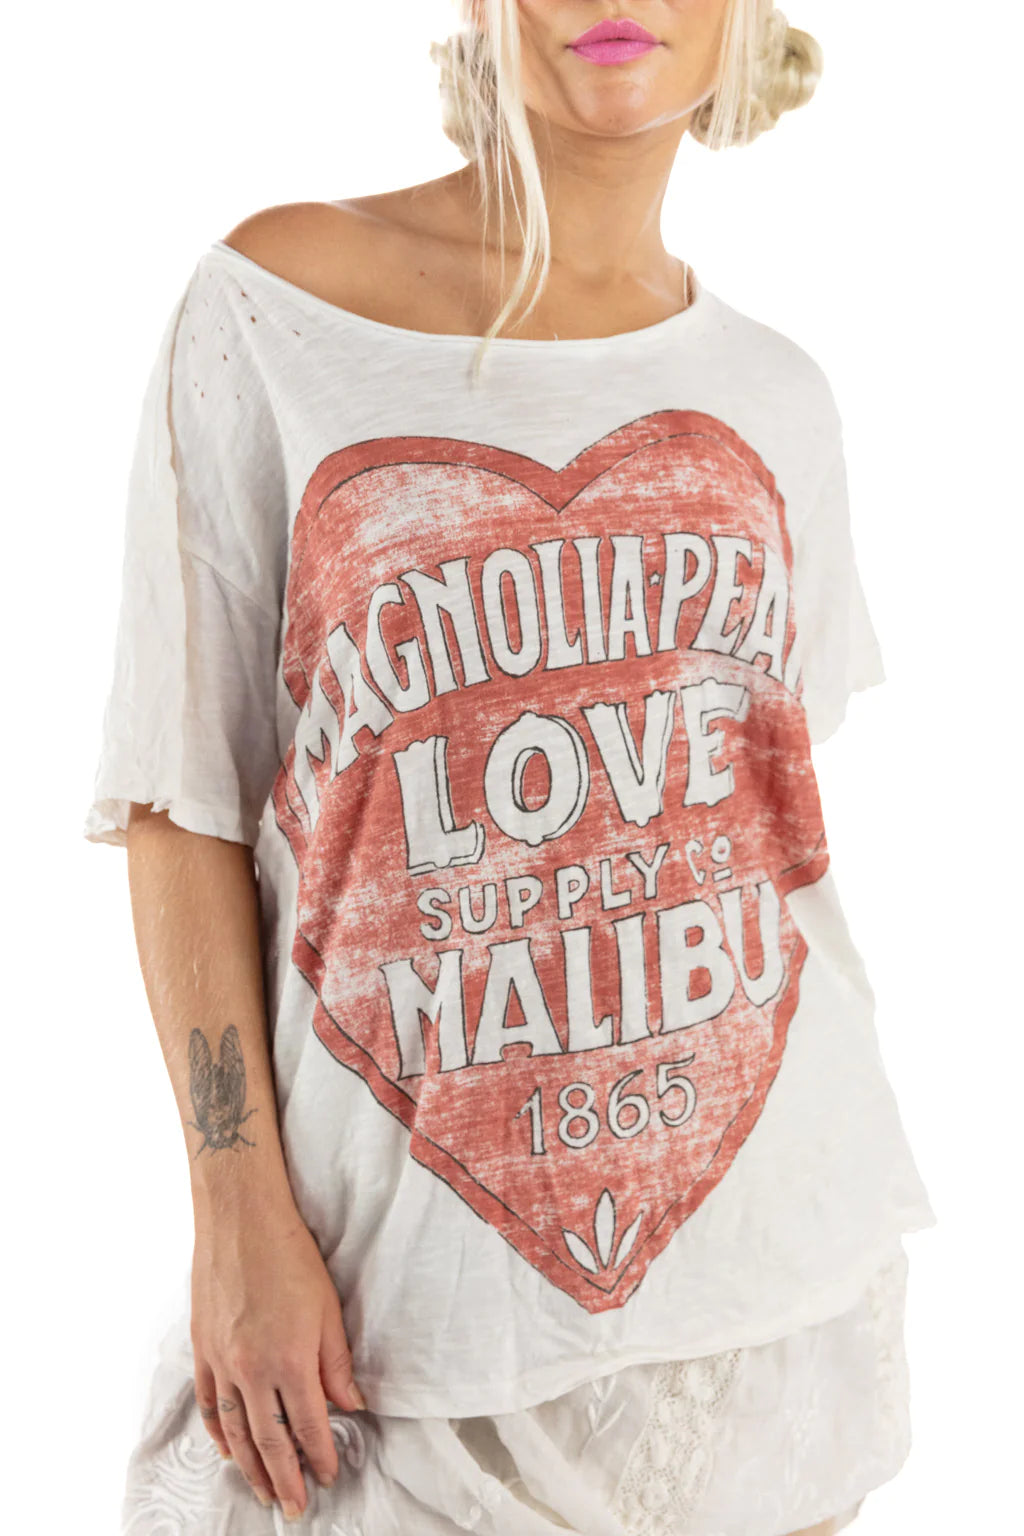 Magnolia Pearl - MP Malibu 1865 Boyfriend T